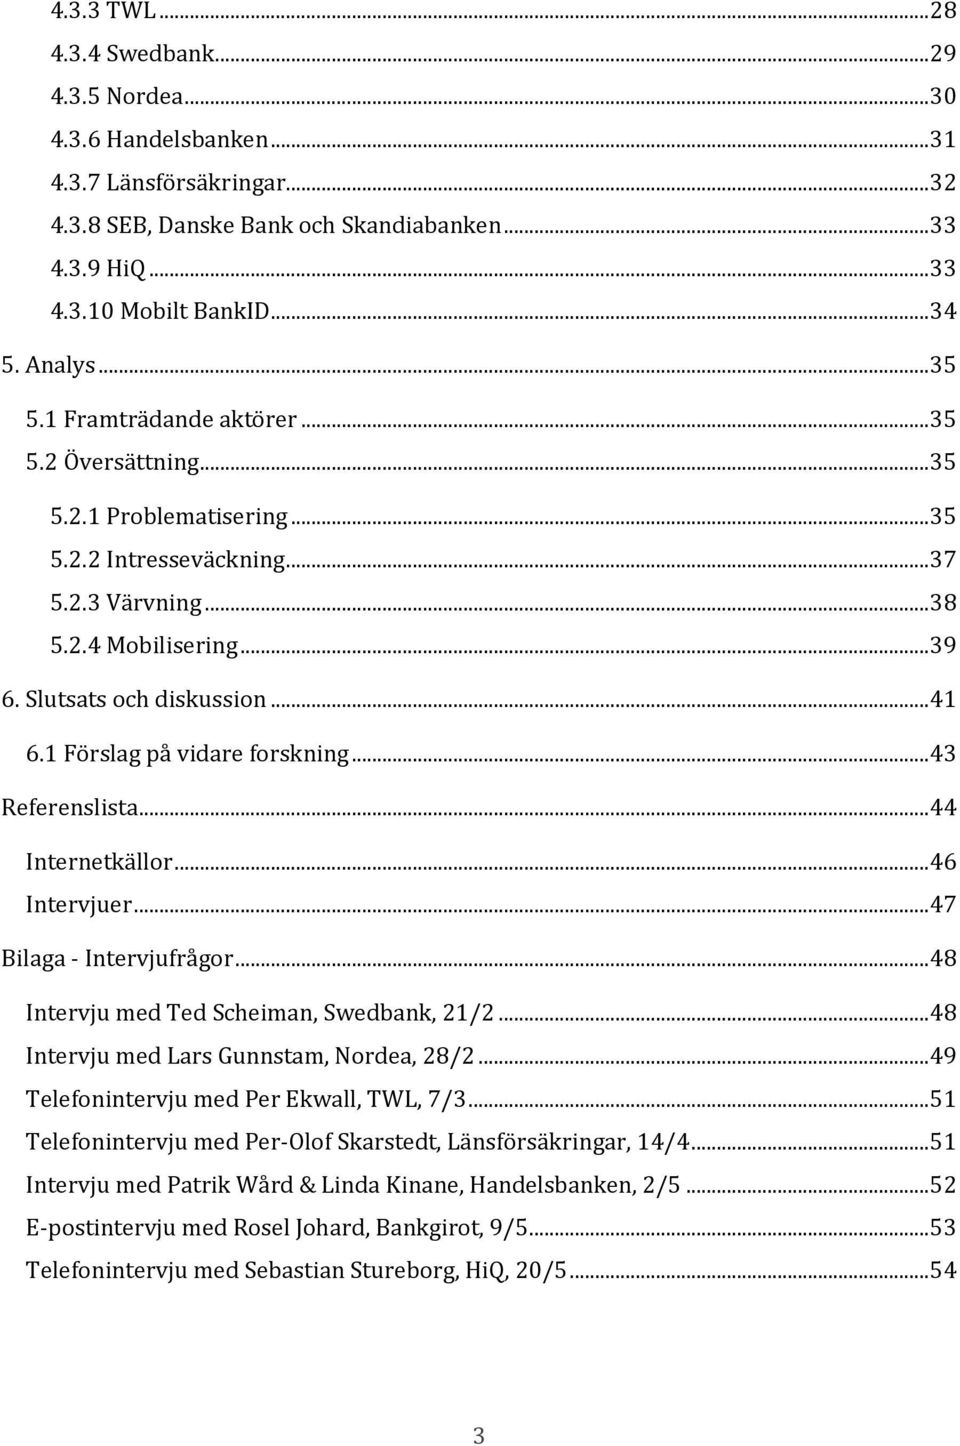 Slutsats och diskussion... 41 6.1 Förslag på vidare forskning... 43 Referenslista... 44 Internetkällor... 46 Intervjuer... 47 Bilaga - Intervjufrågor... 48 Intervju med Ted Scheiman, Swedbank, 21/2.